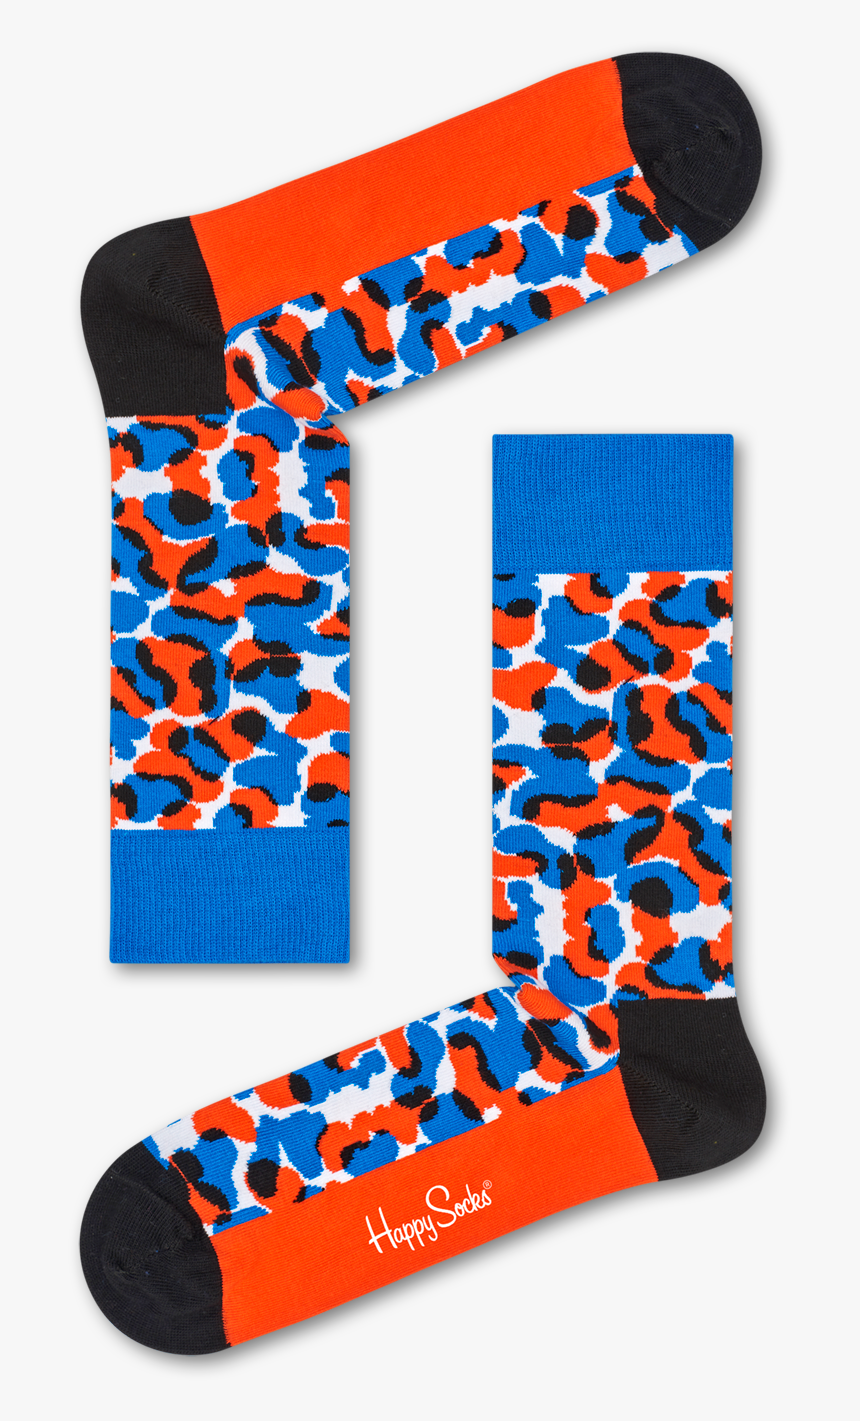 Wiz Khalifa Black & Blue Sock - Happy Socks, HD Png Download, Free Download